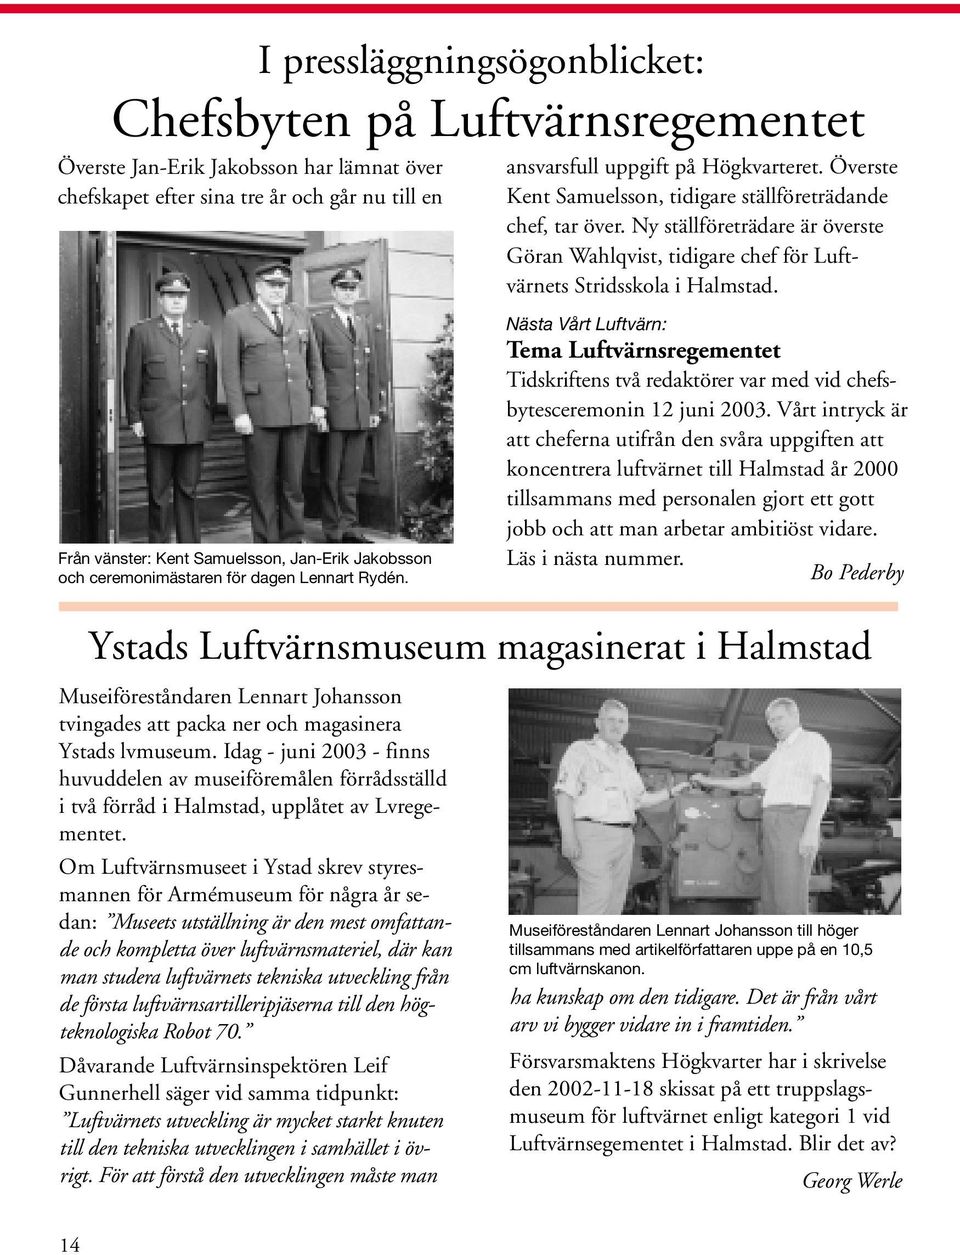 Idag - juni 2003 - finns huvuddelen av museiföremålen förrådsställd i två förråd i Halmstad, upplåtet av Lvregementet.